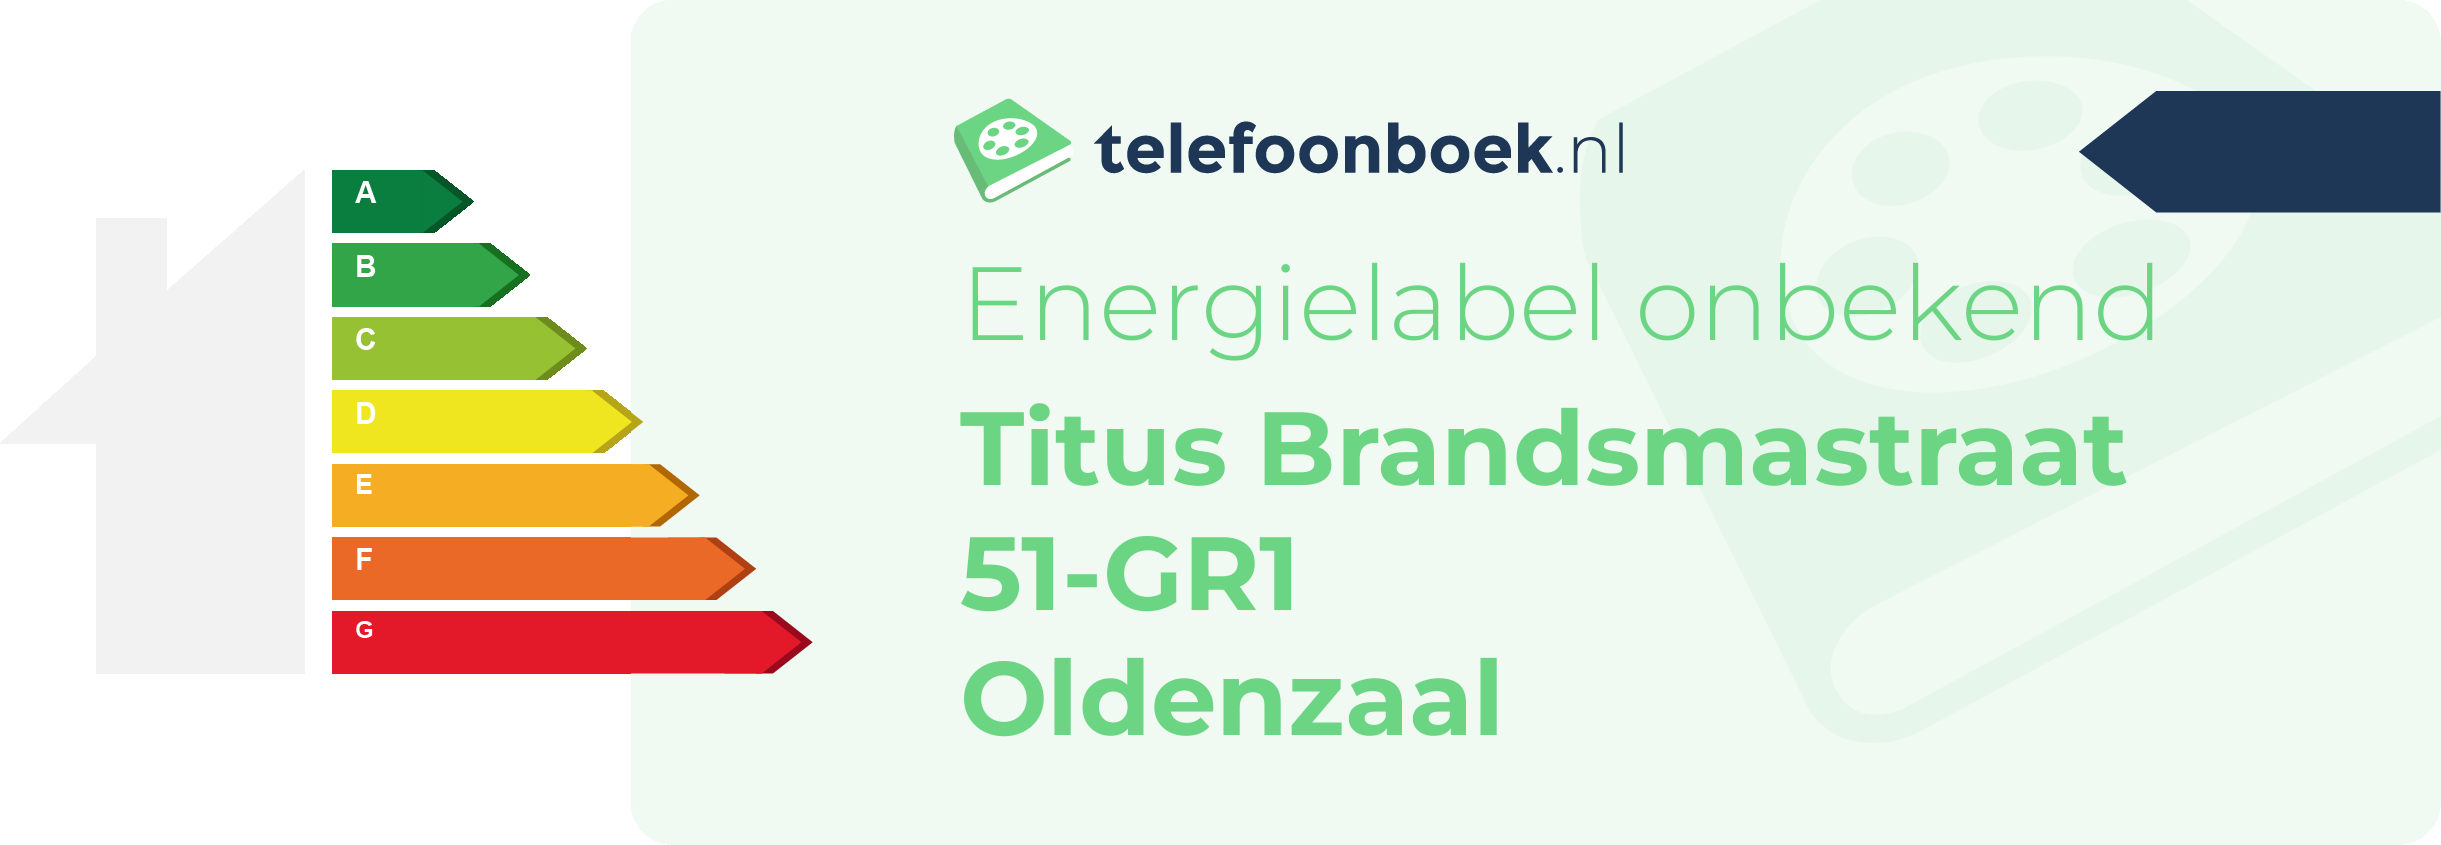 Energielabel Titus Brandsmastraat 51-GR1 Oldenzaal